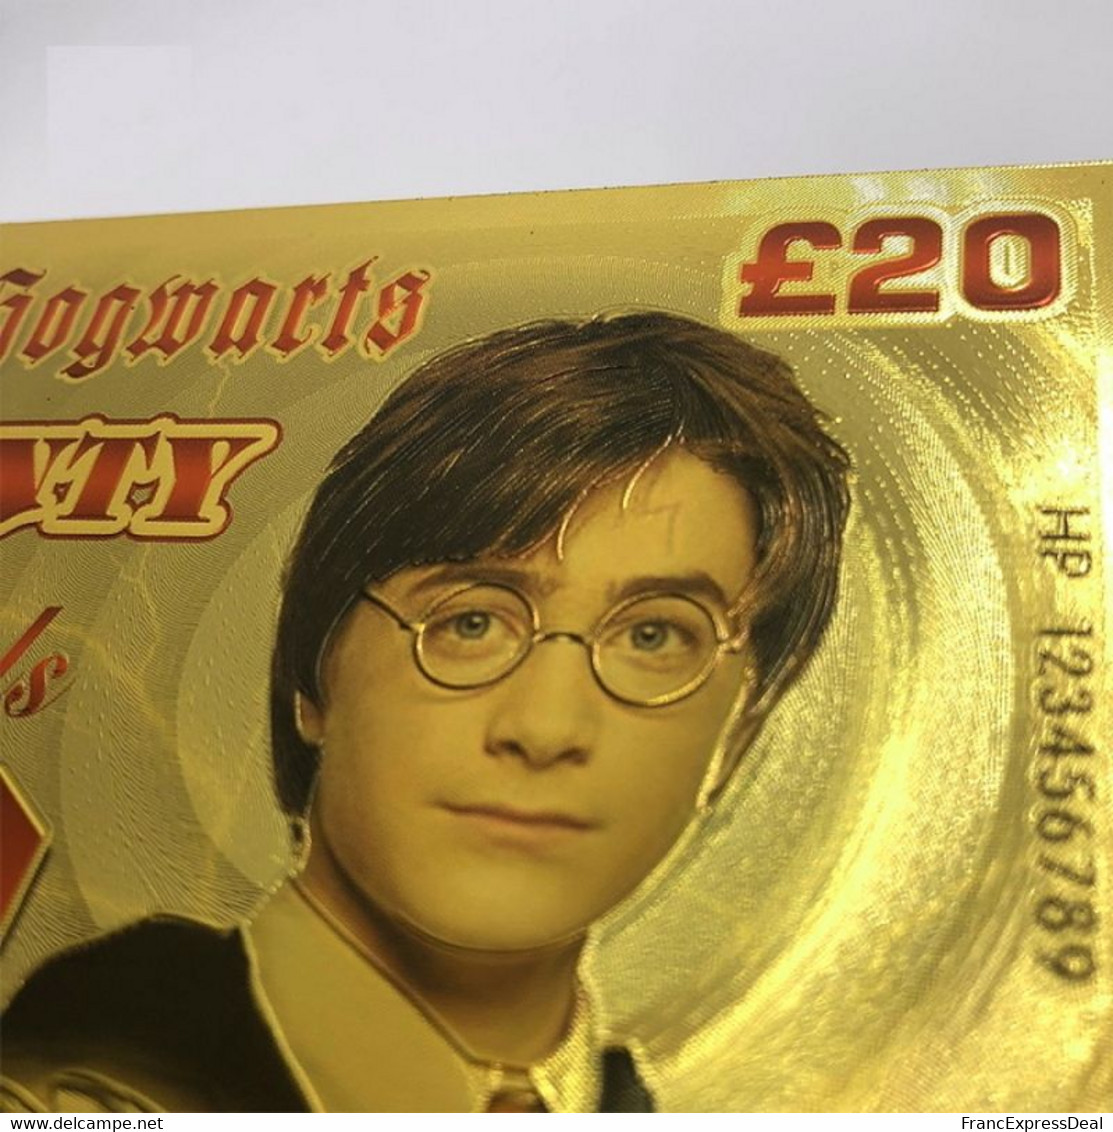 1 Billet plaqué OR ( GOLD Plated Banknote ) - Harry Potter Bank of Hogwarts